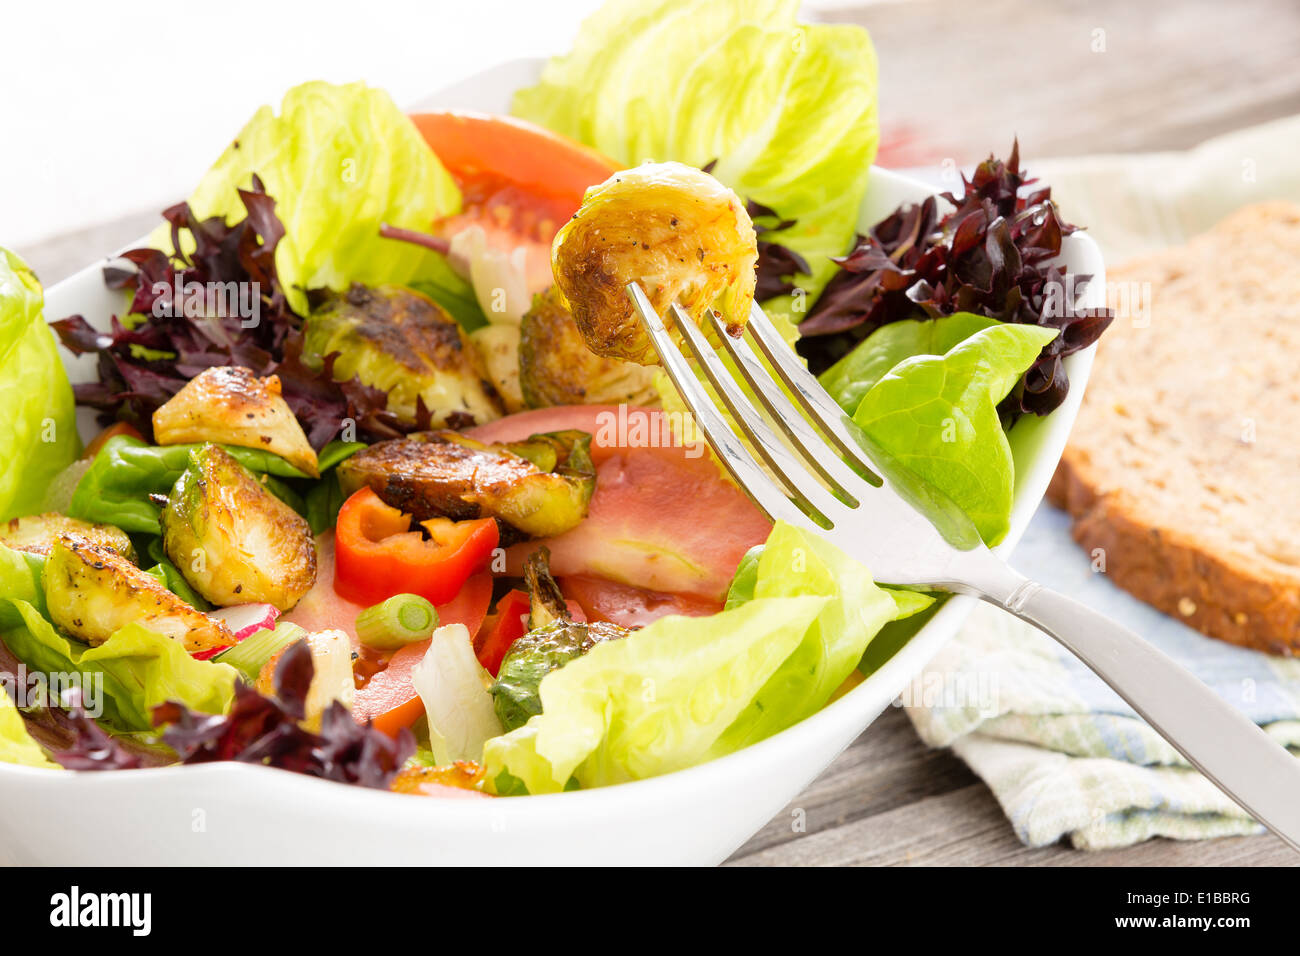 Bénéficiant d'un repas végétarien sain des choux de bruxelles sautés dans une salade de mesclun, tomate et radis avec une tranche Banque D'Images